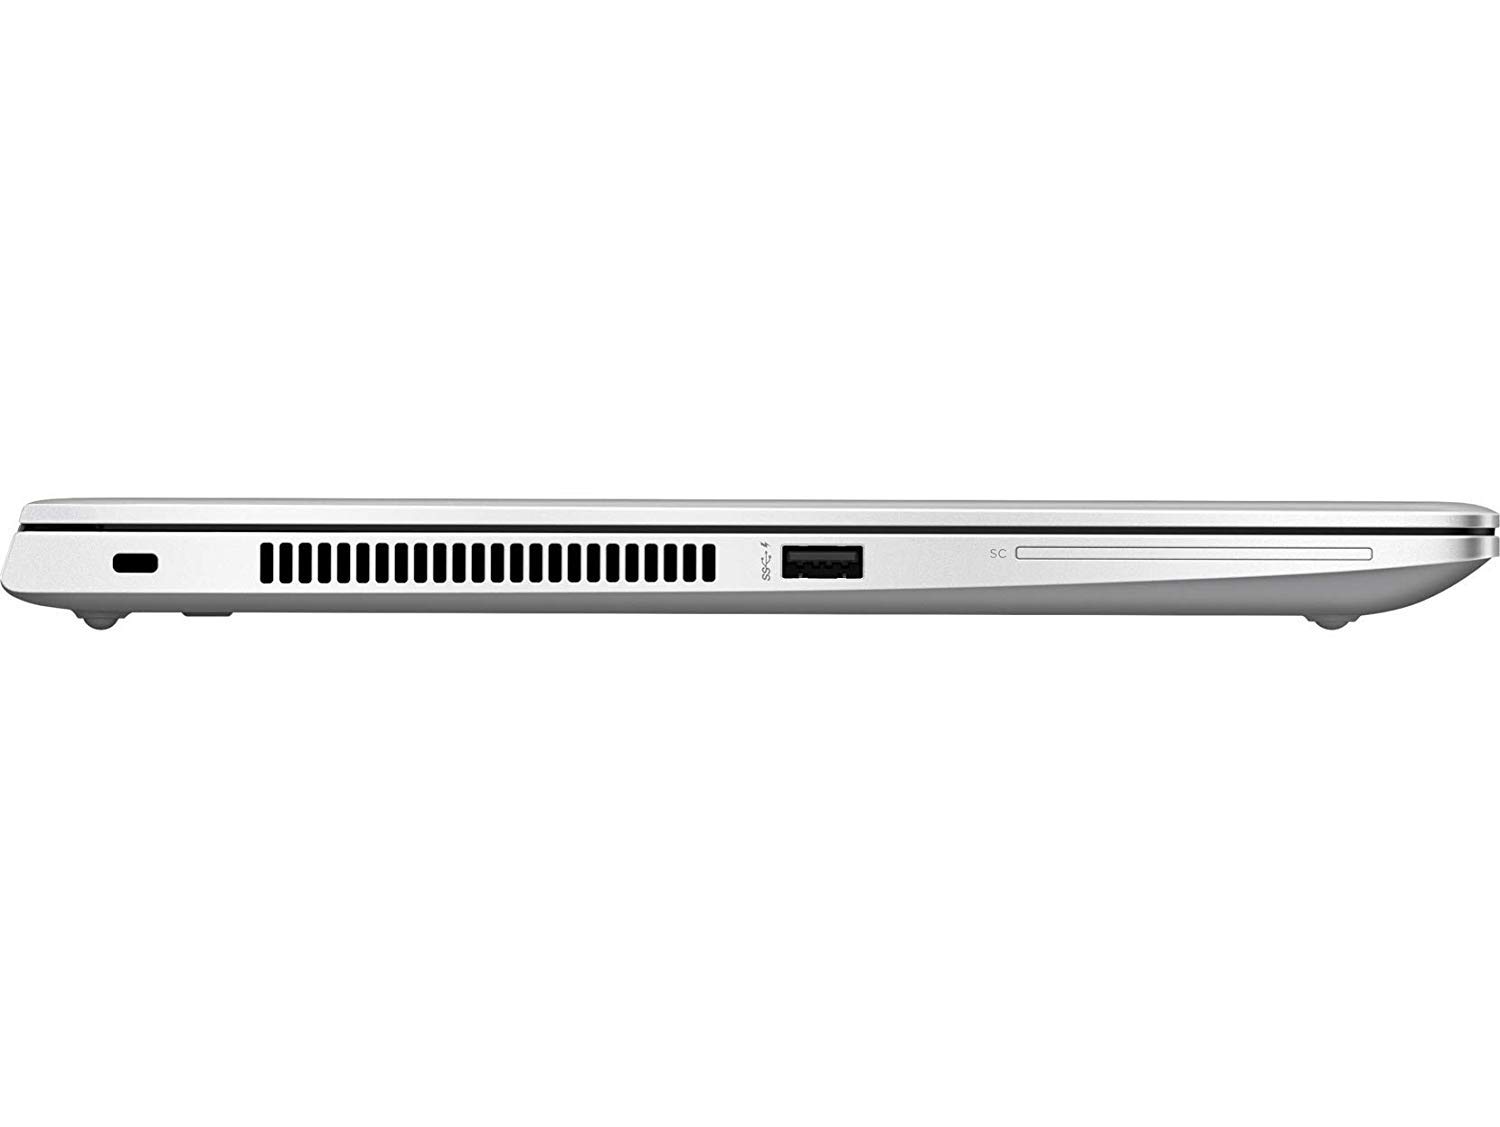 HP EliteBook 840 G6 14" FHD (1920x1080) IPS Business Laptop (Intel Quad Core i5-8265U, 16GB RAM, 256GB SSD)